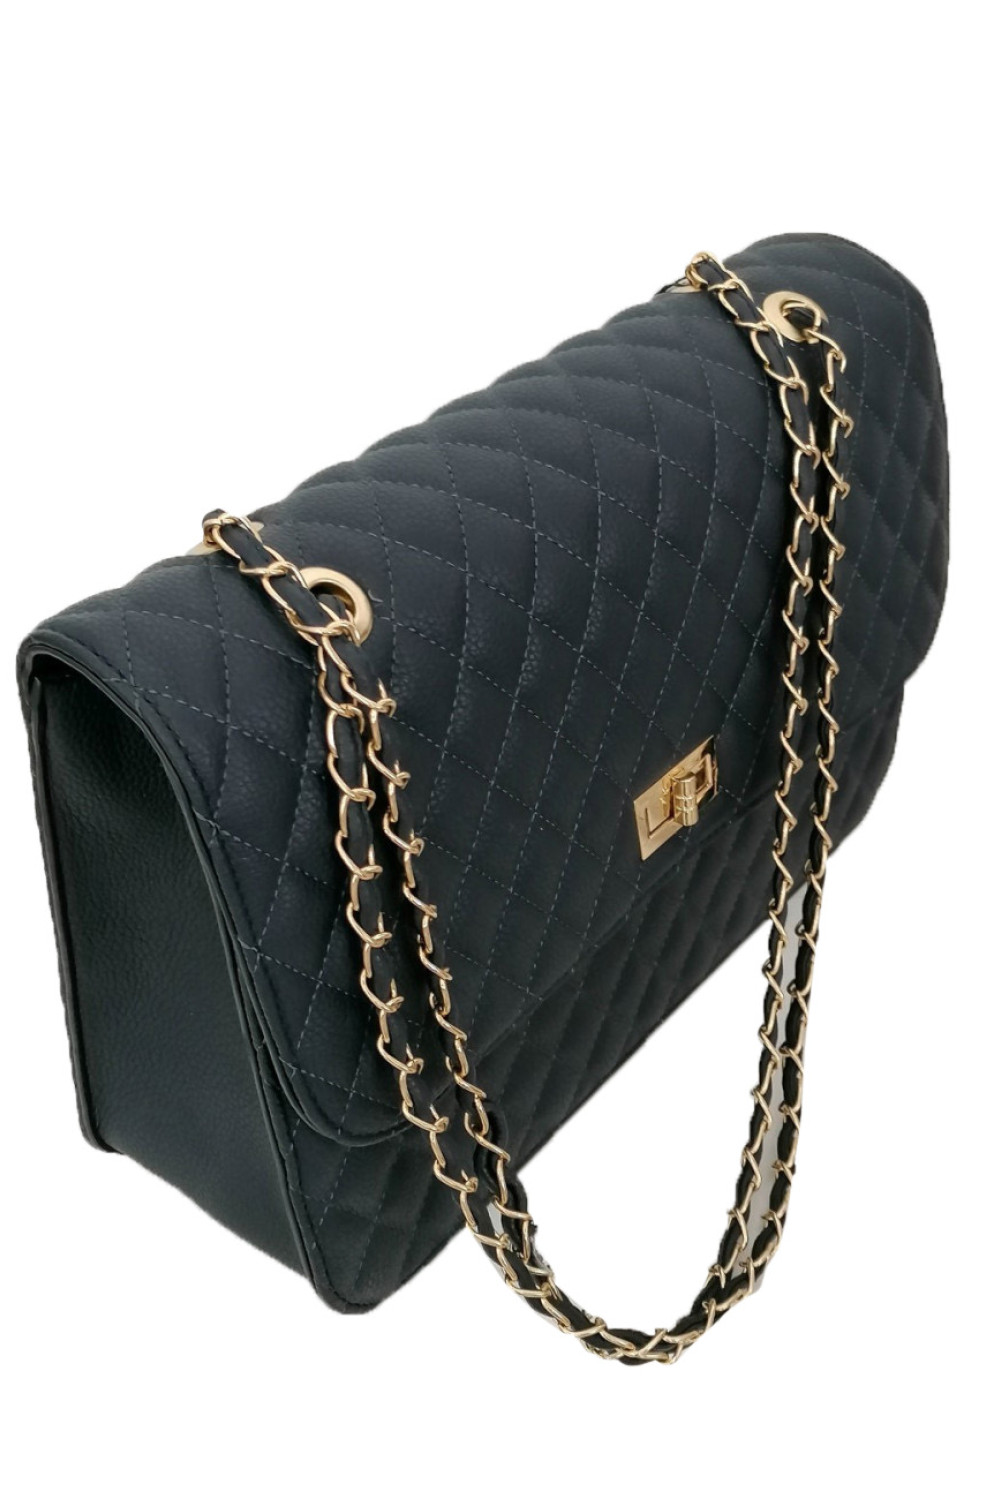 Γυναικεία μαύρη καπιτονέ τσάντα ώμου με αλυσίδα χρυσή 060261